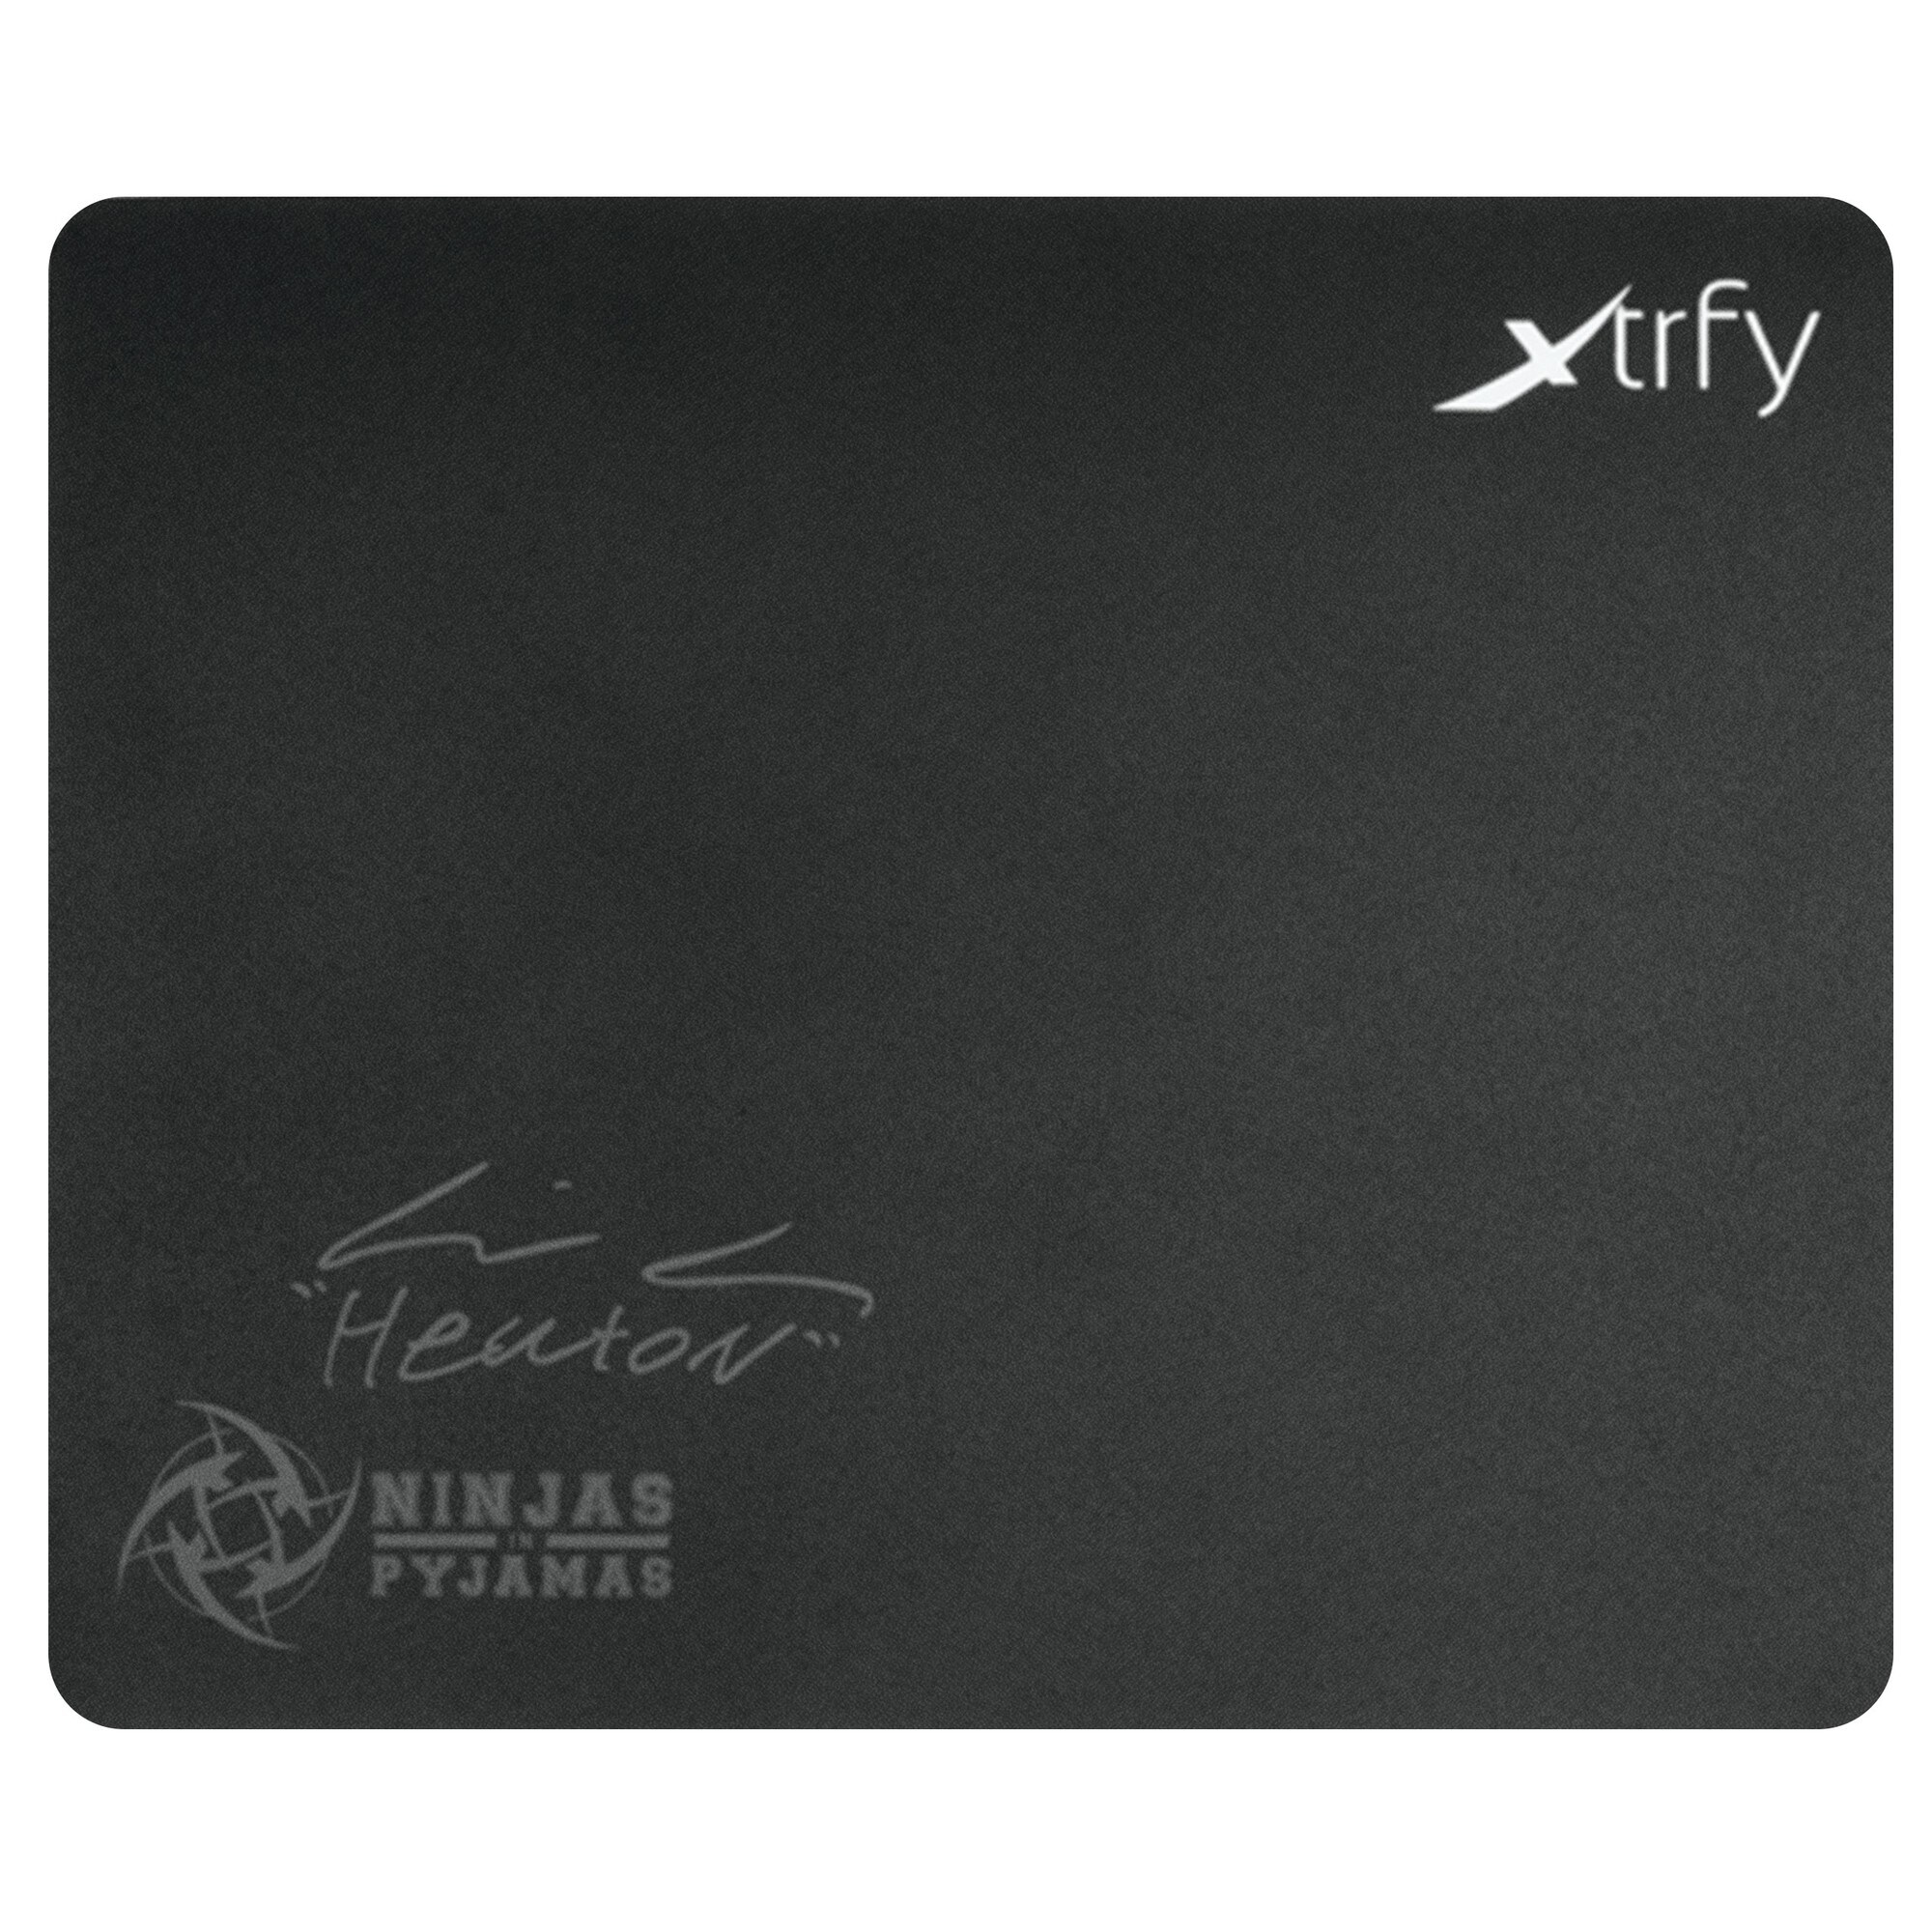 Xtrfy GP3-musematte med HeatoN-design (stor) - Mus og tastatur - Elkjøp